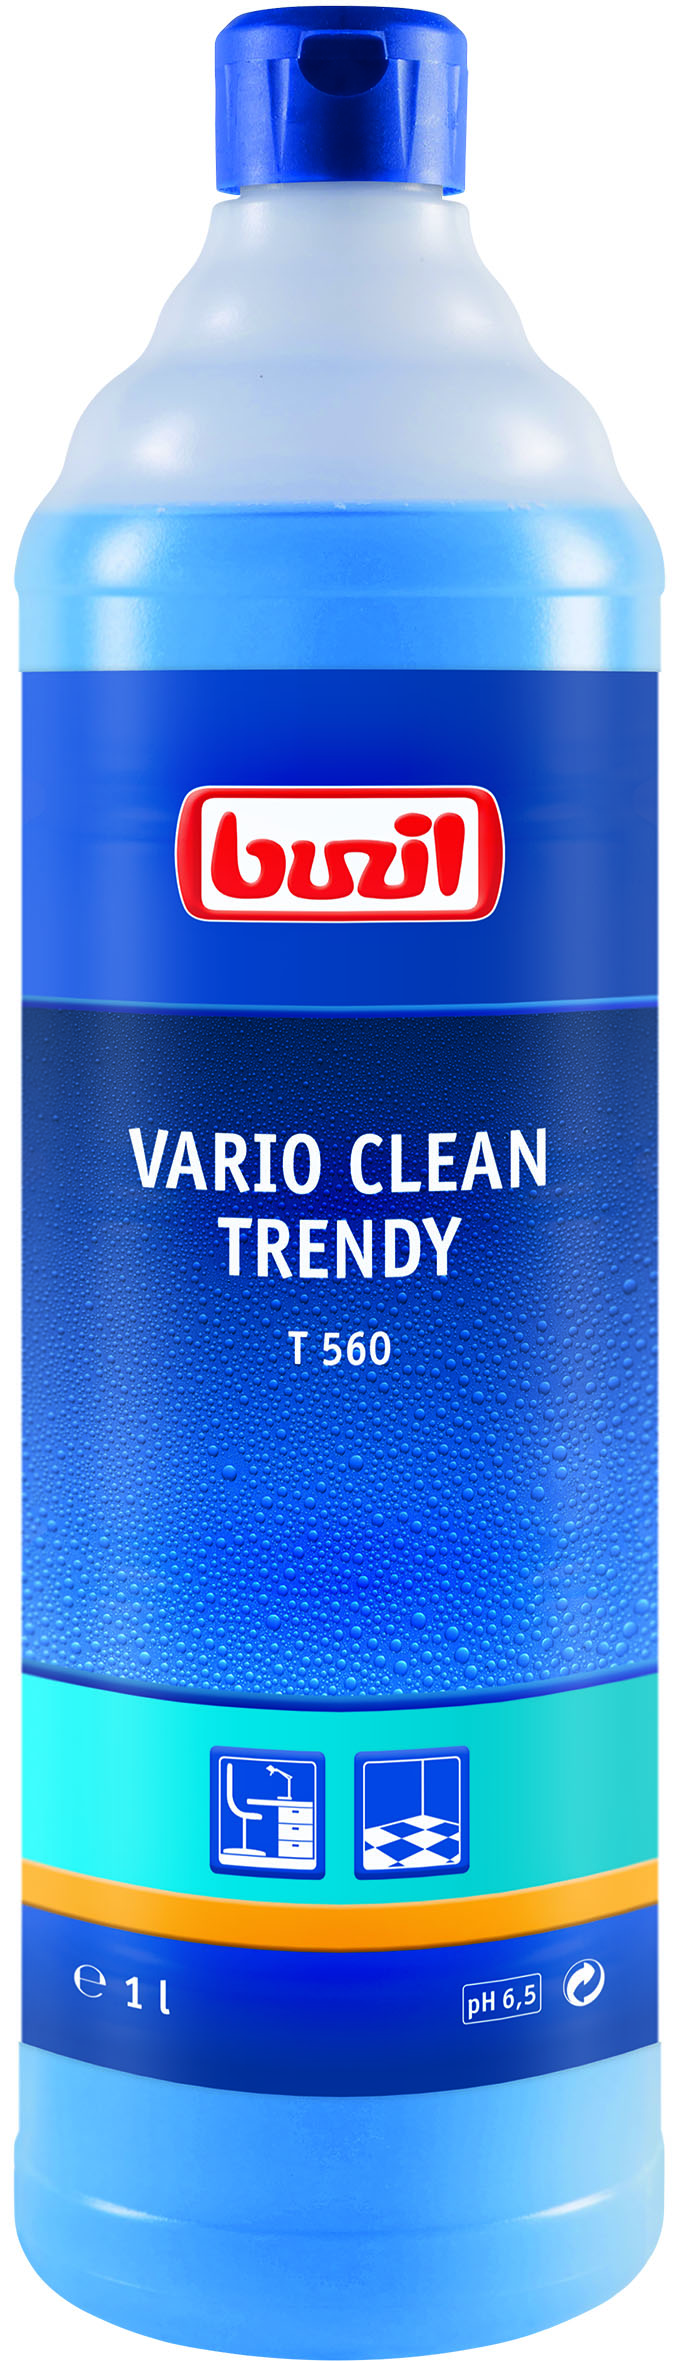 T560 Vario-Clean Trendy